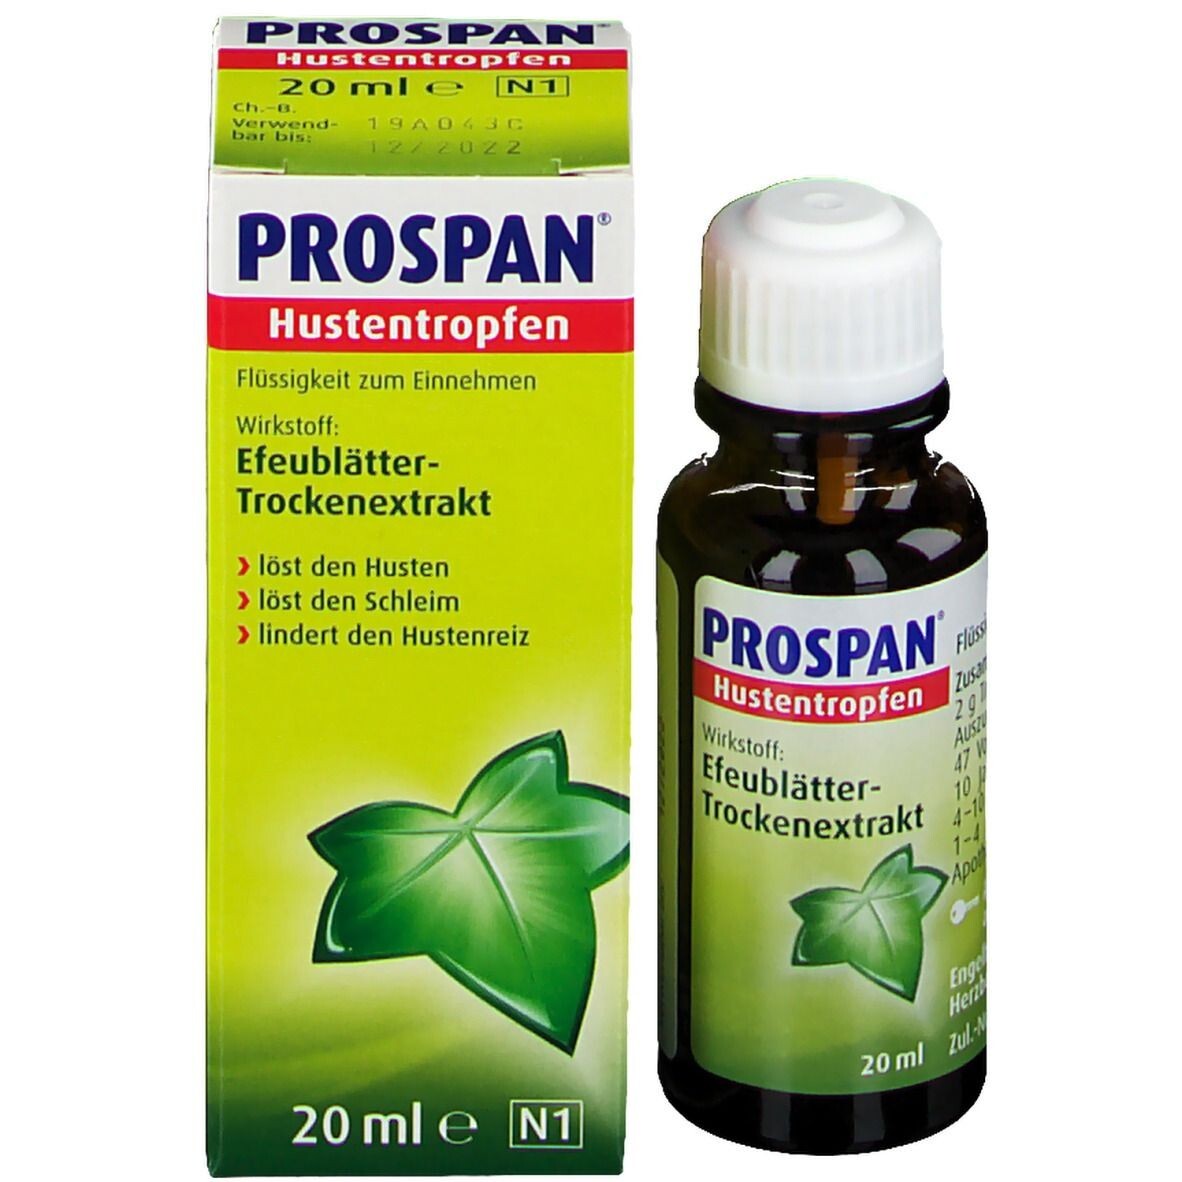 Siro chữa ho Prospan dành cho trẻ sơ sinh 20ml